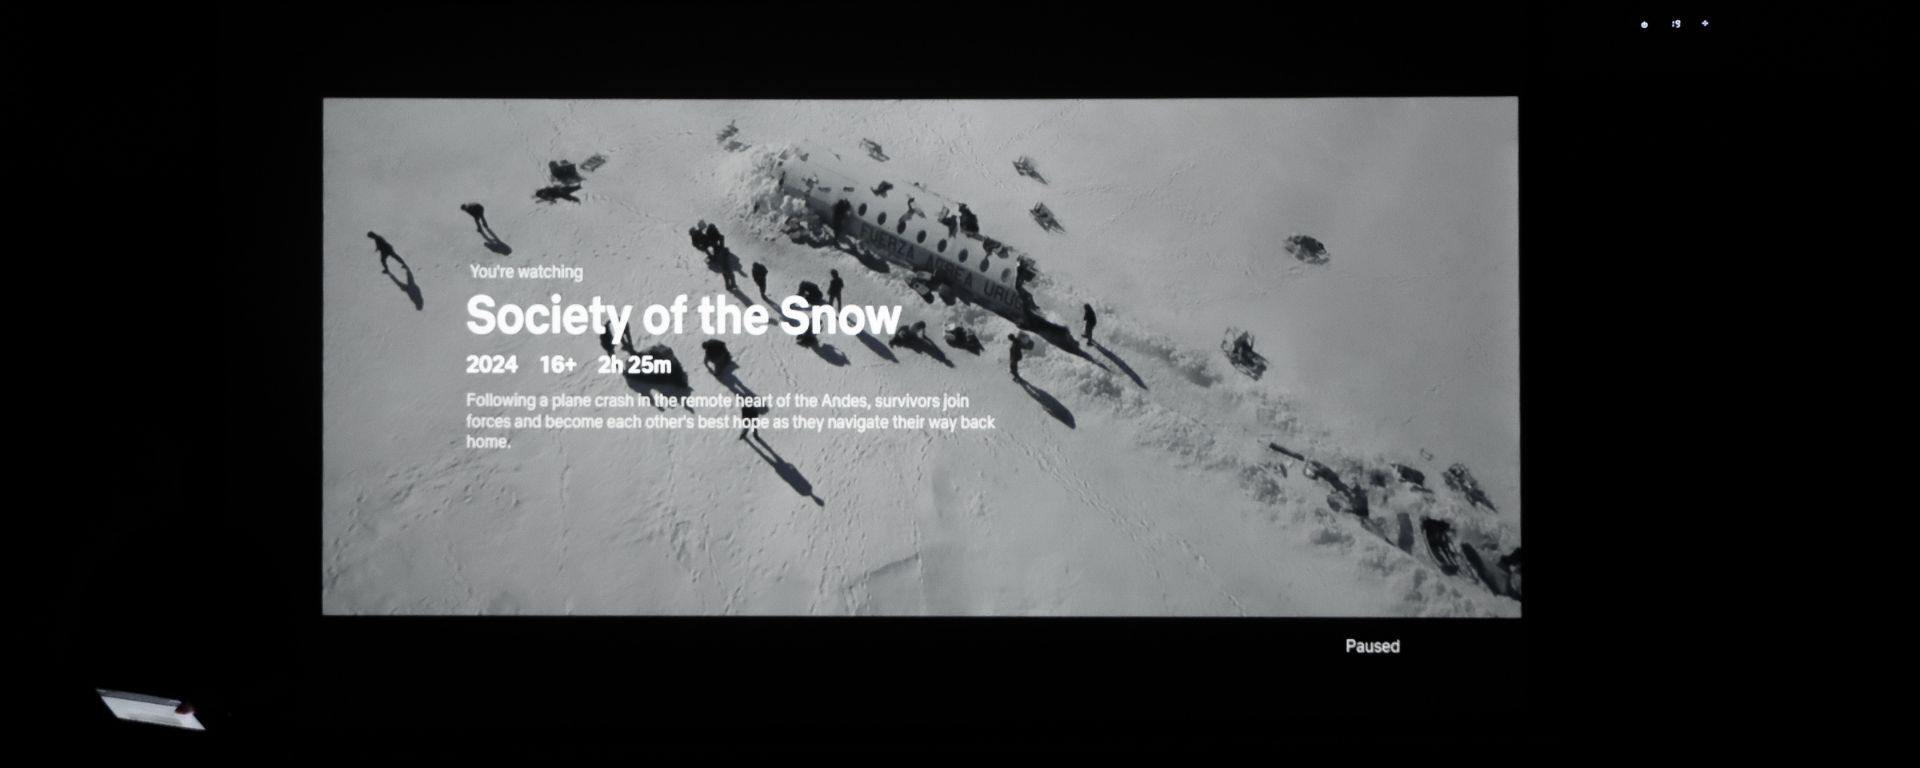 Diego Sardi: “La Sociedad de la Nieve es una historia sobre historias”